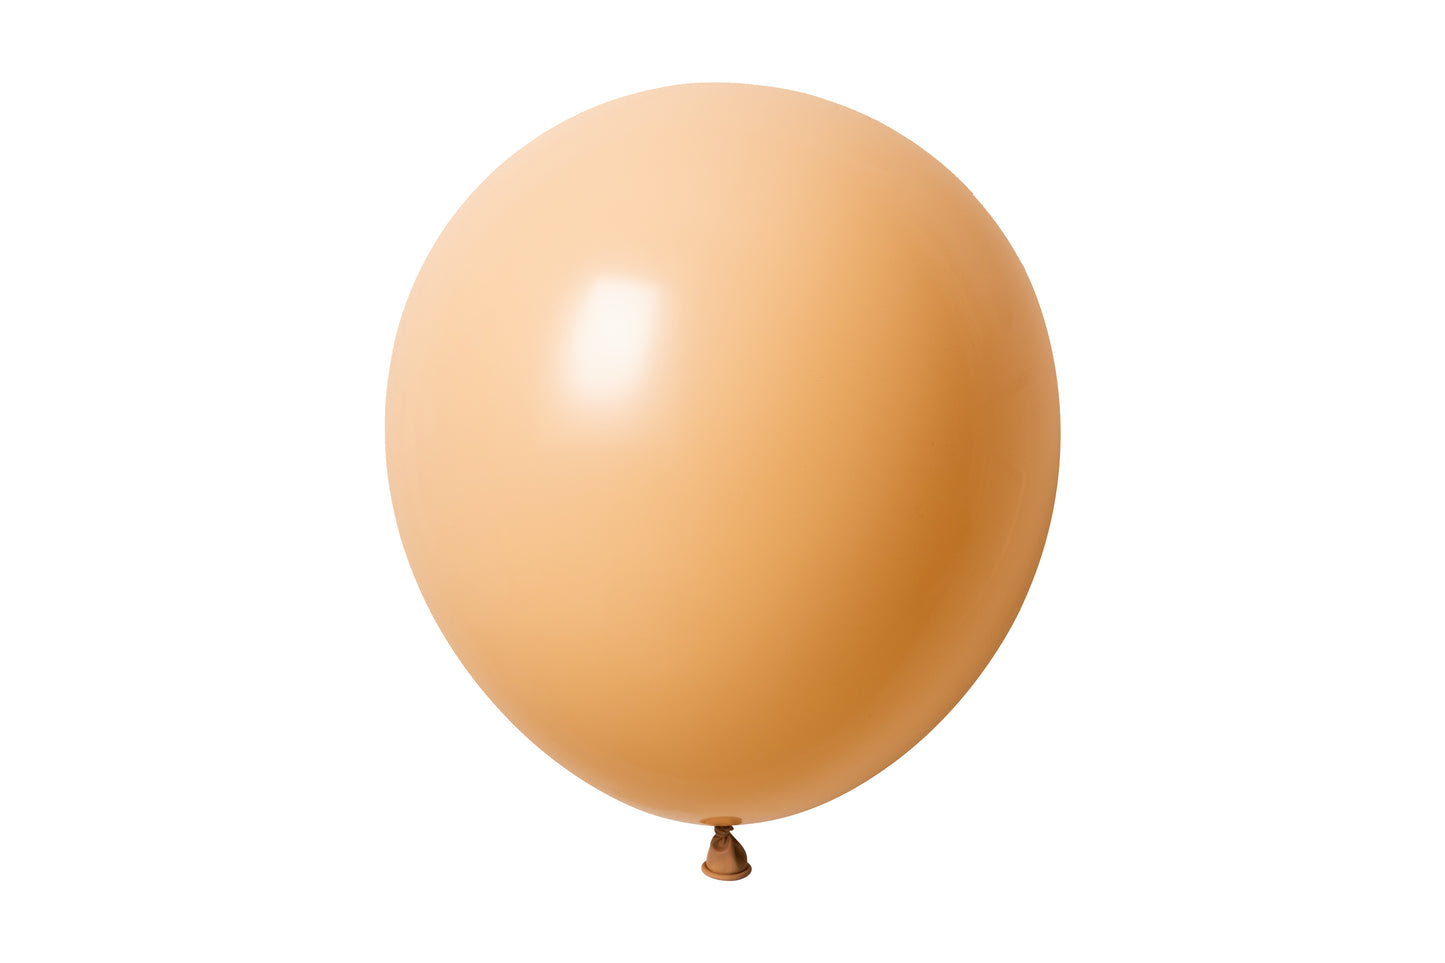 Winntex Premium 36" Latex Balloon - Blush - 5ct